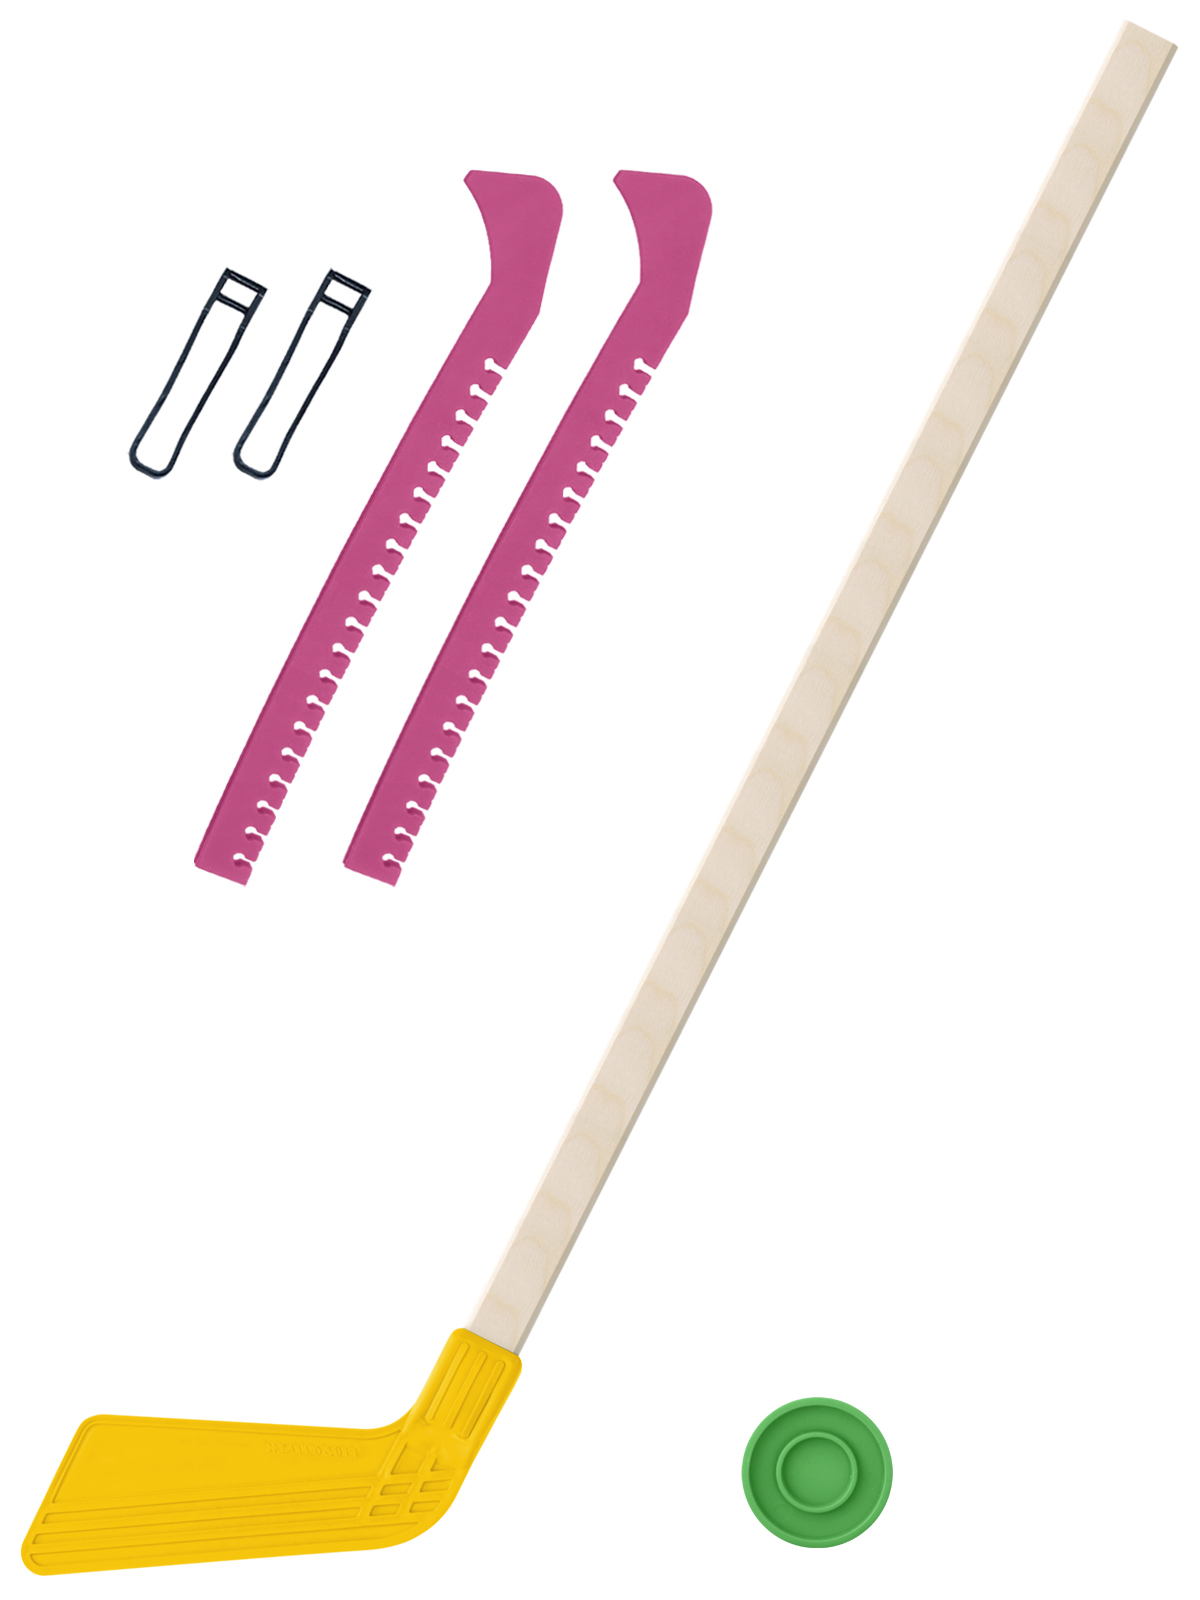 фото Набор зимний клюшка хоккейная жёлтая 80 см.+шайба+чехлы для коньков розовые задира-плюс